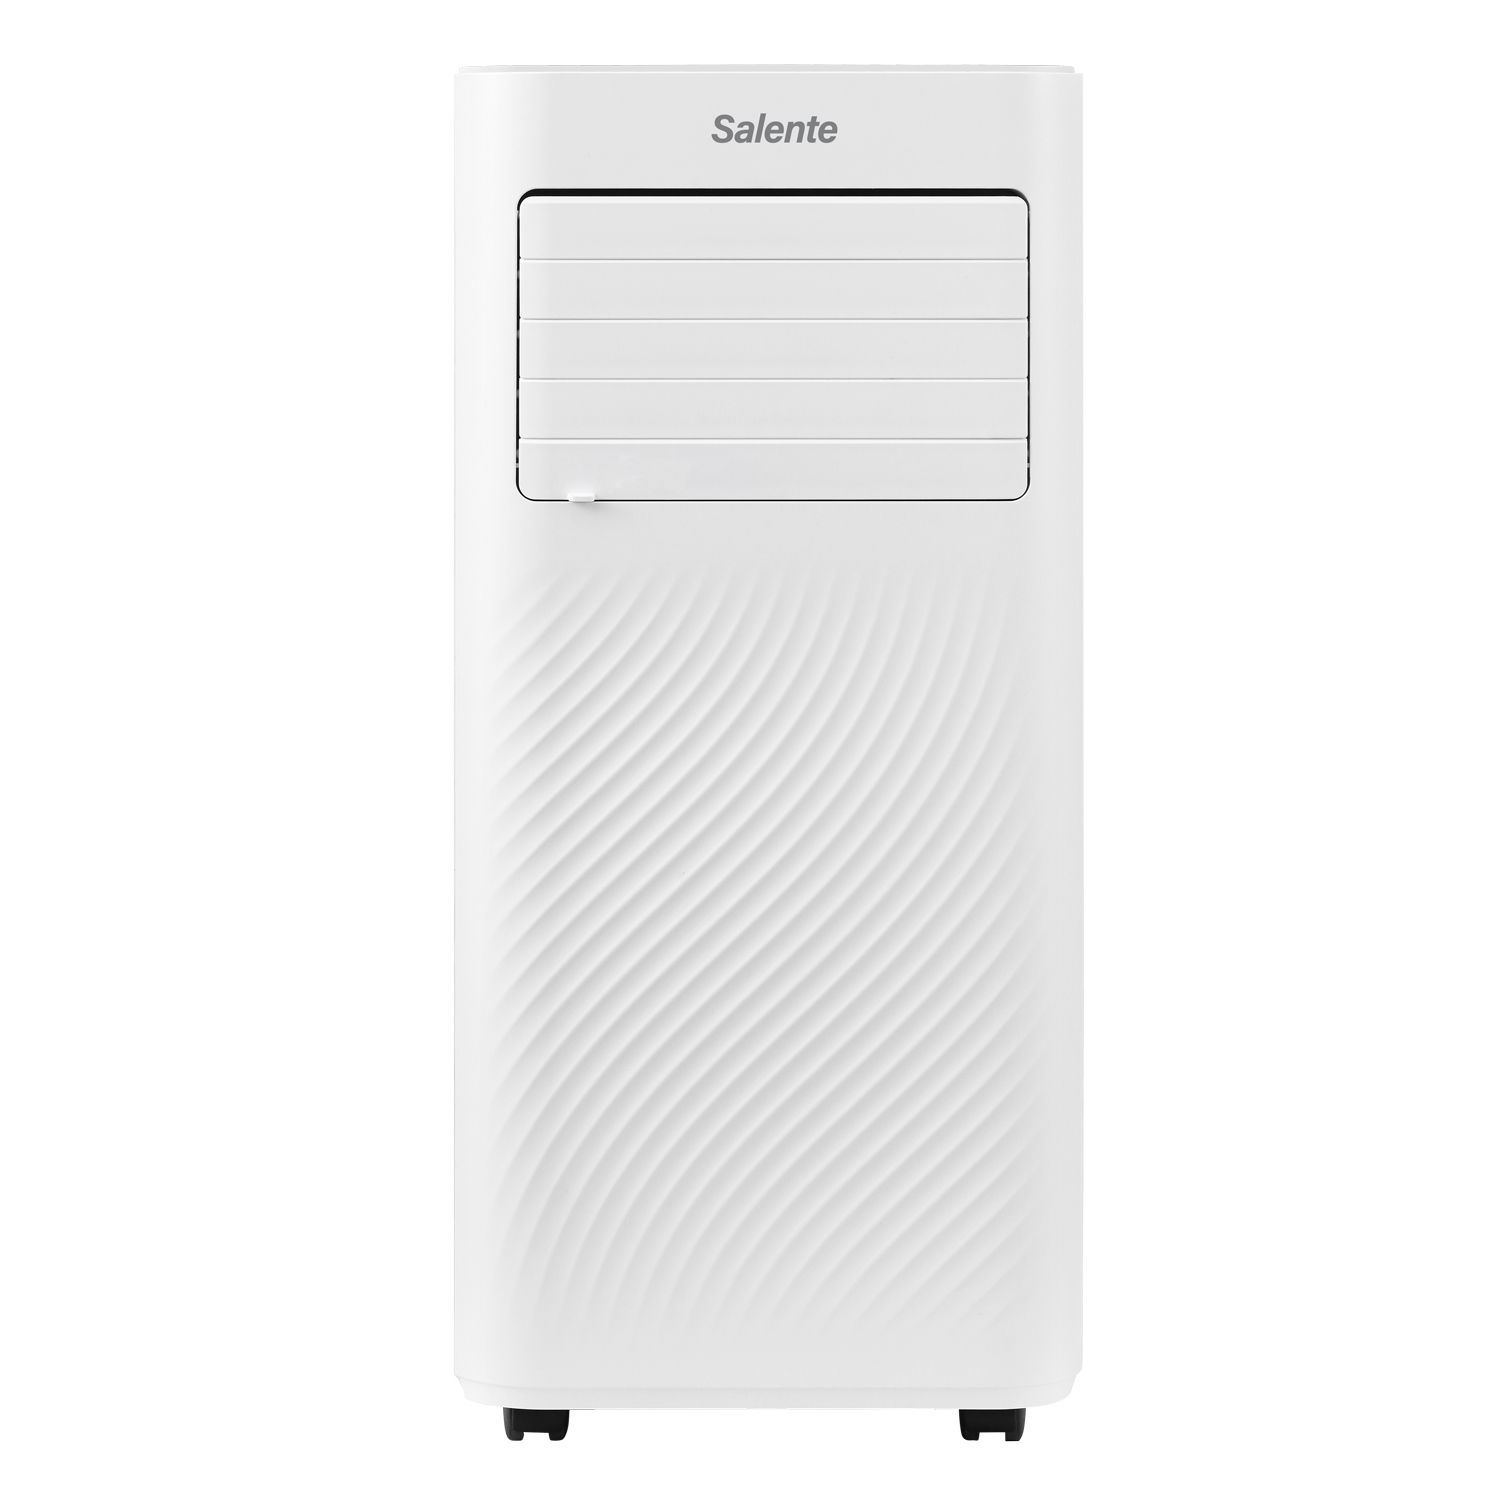 Salente SummerICE9, chytrá mobilní klimatizace, 9000 BTU, WiFi+Bluetooth, dálk. ovl.